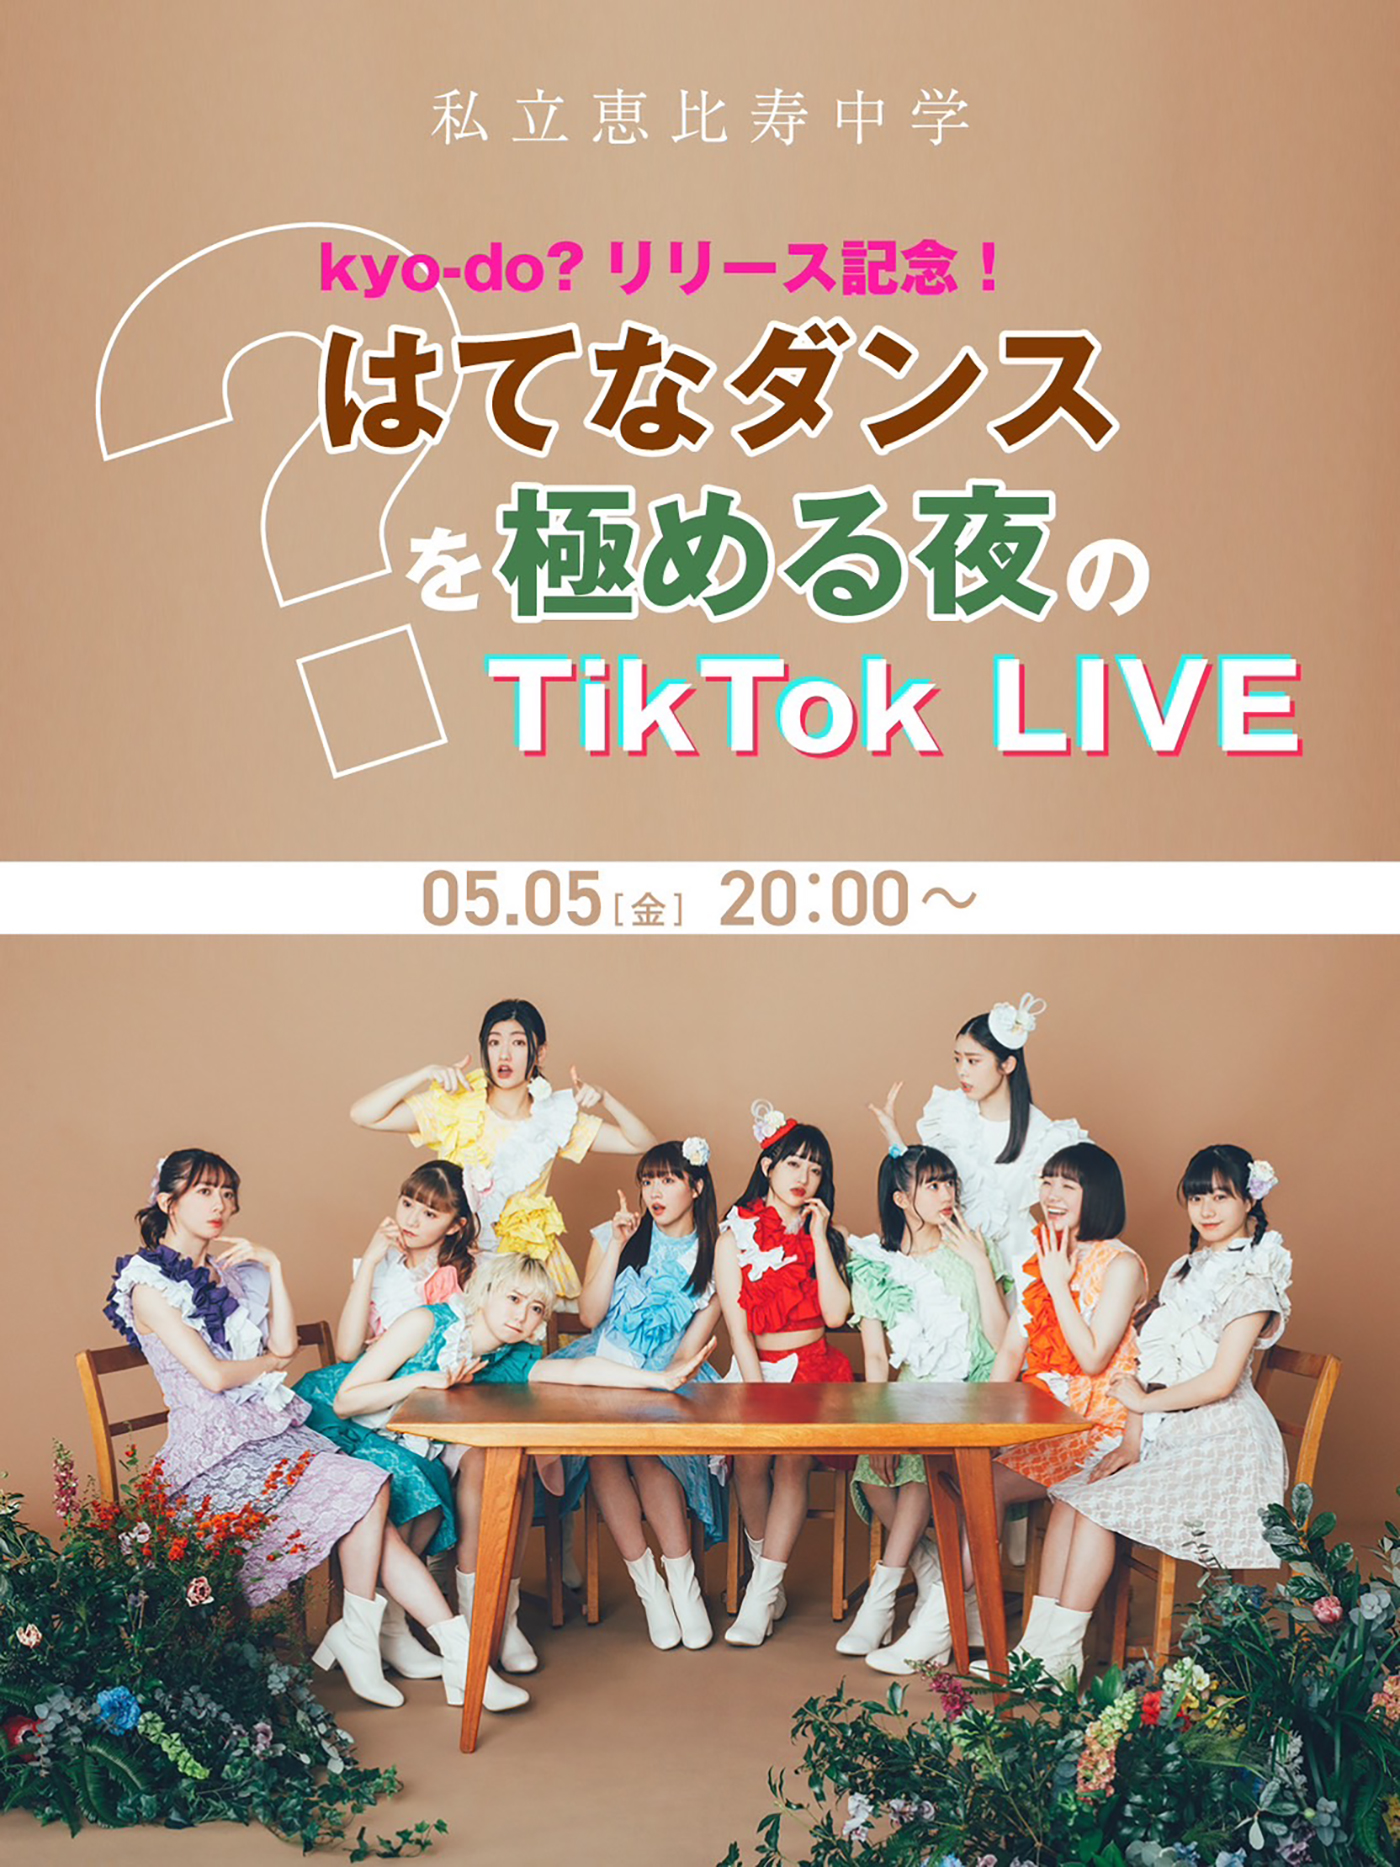 私立恵比寿中学、ニューシングル「kyo-do?」の発売を記念してこどもの日に自身初のTikToK LIVEを開催